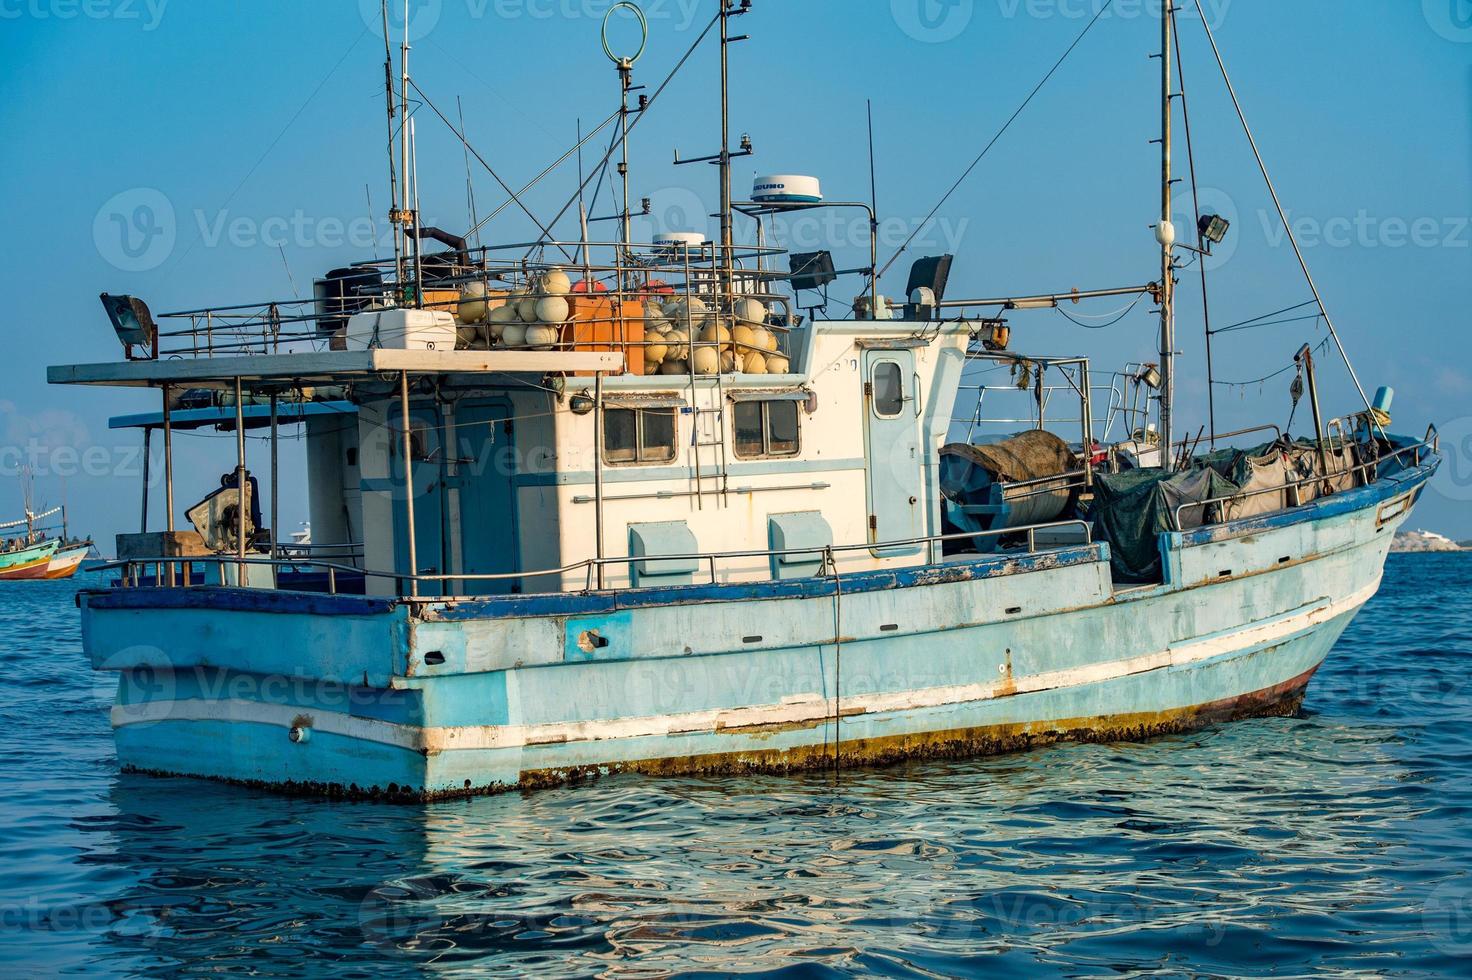 maledivisches fischerboot in männlich foto